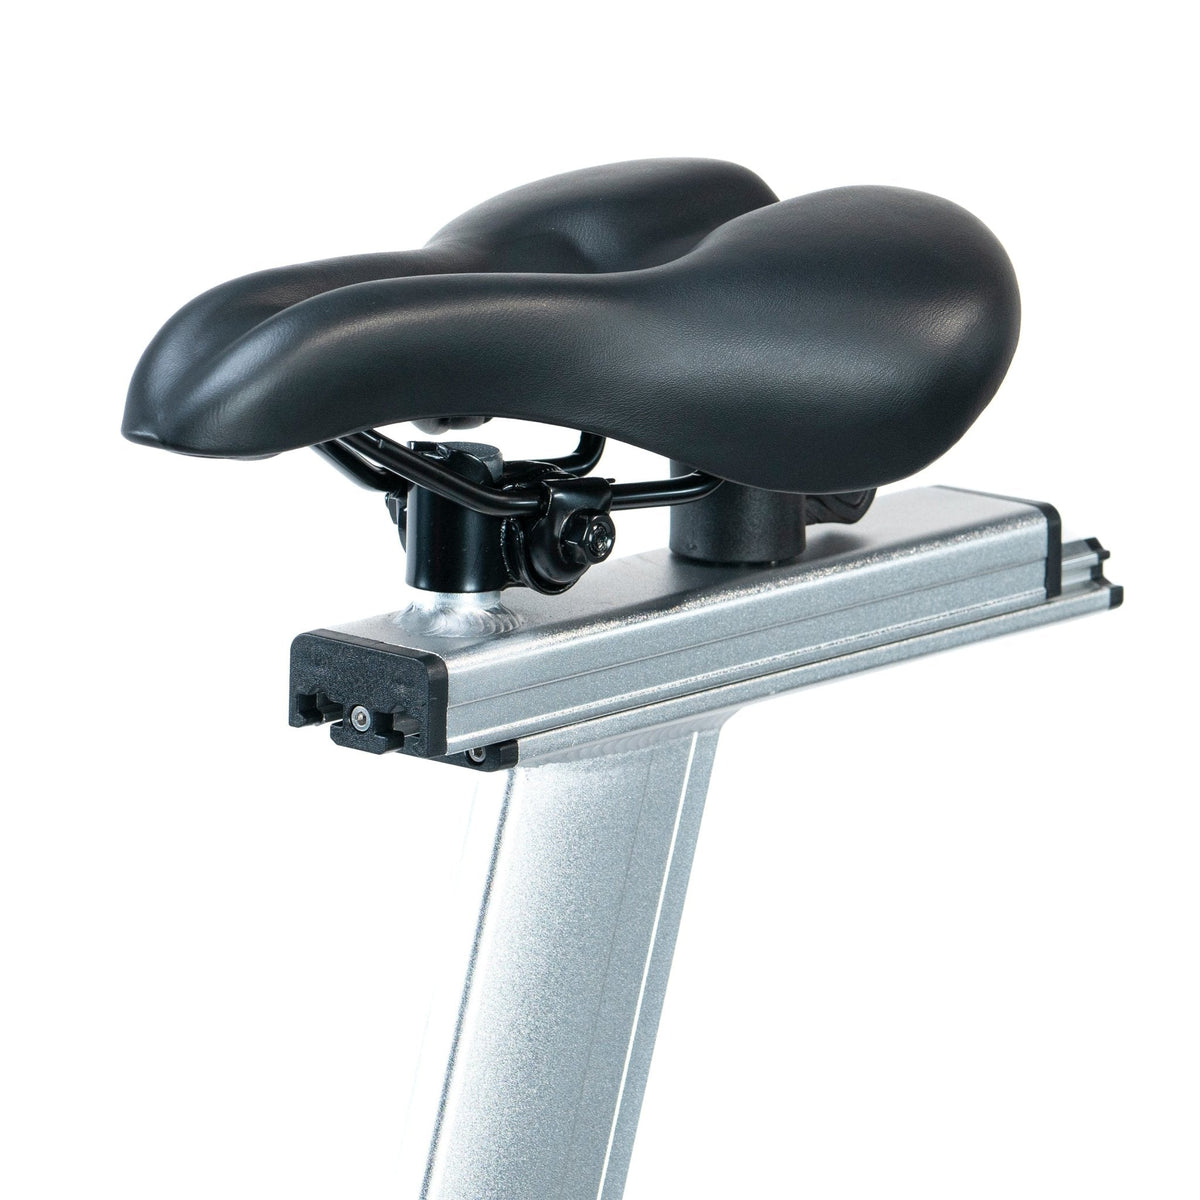 FitWay Equip. 1500IC Indoor Cycle - Seat Design